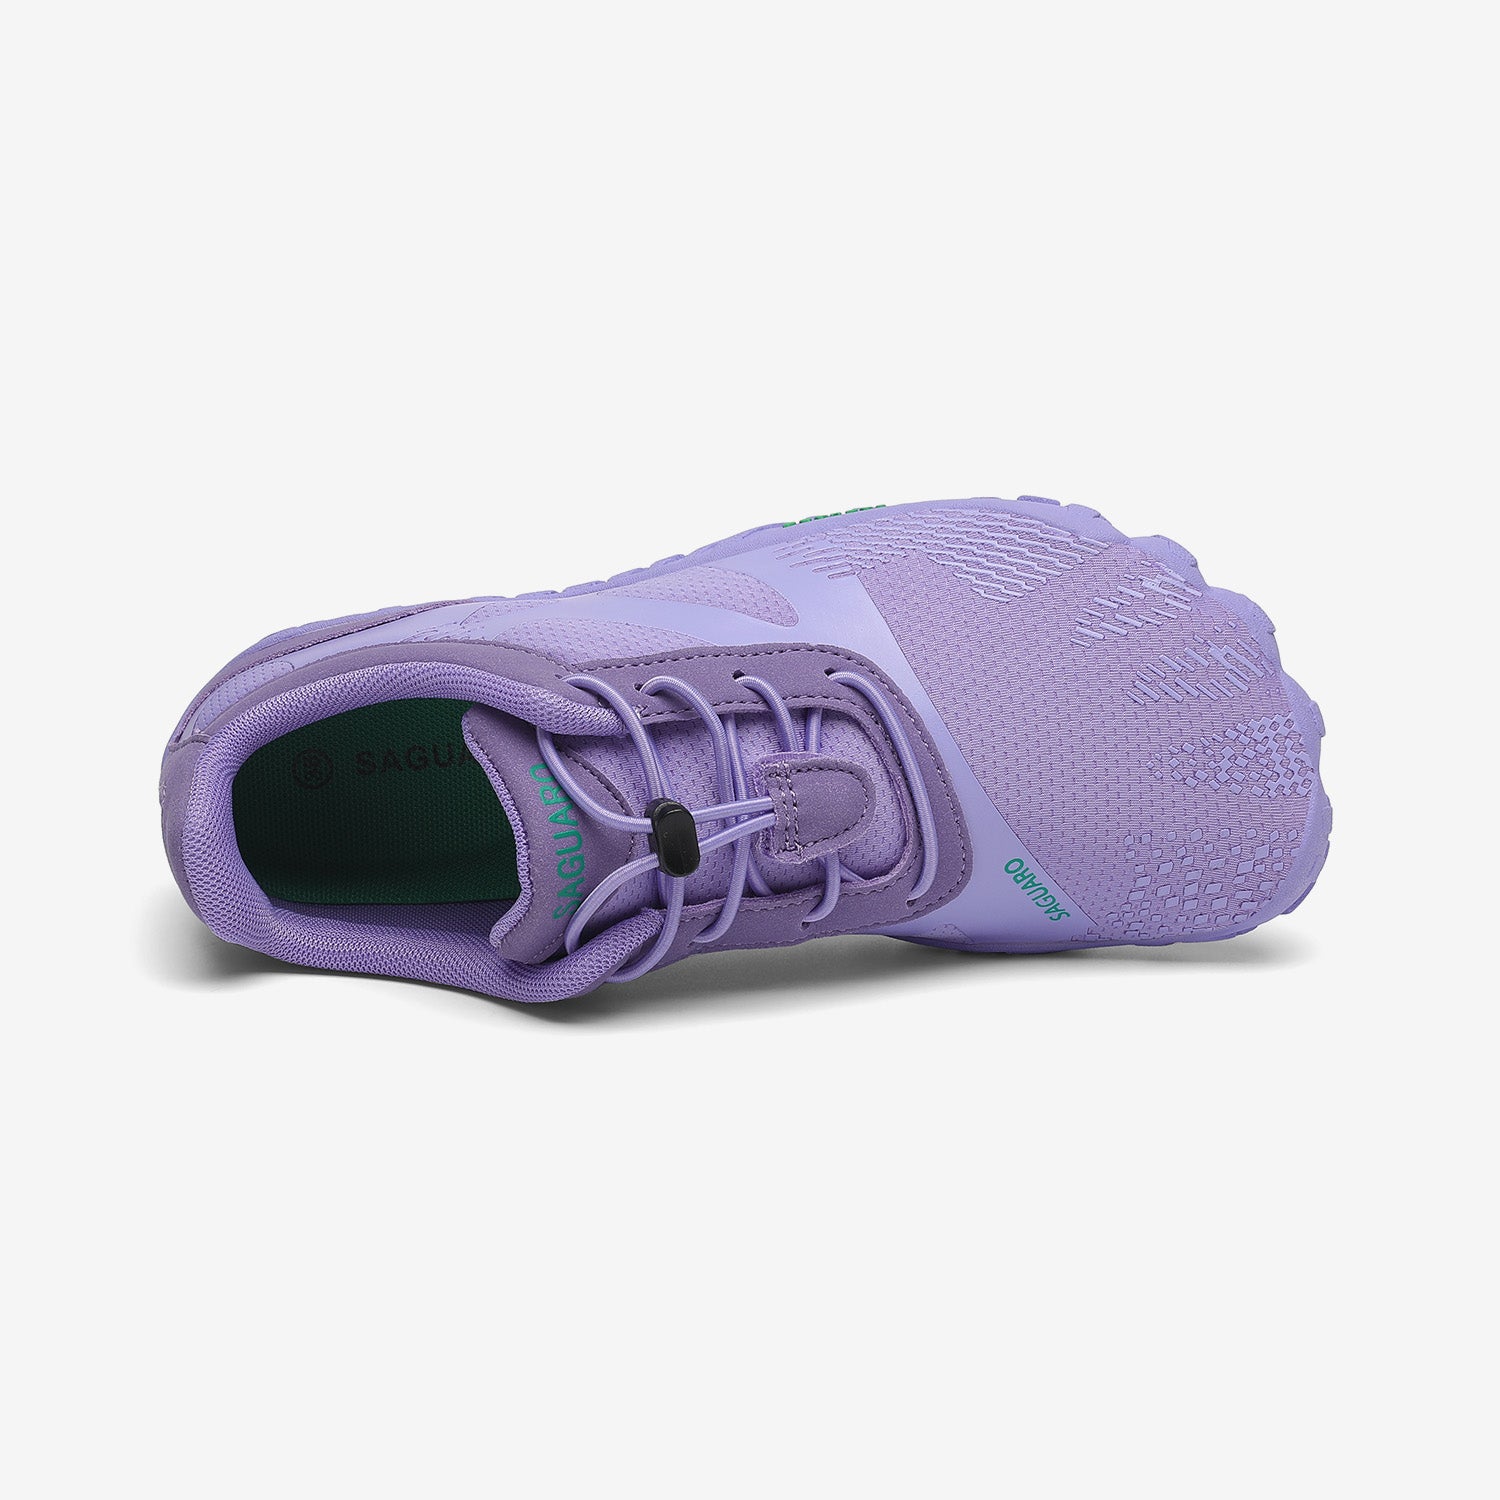 Vitality III - Zapatos Barefoot